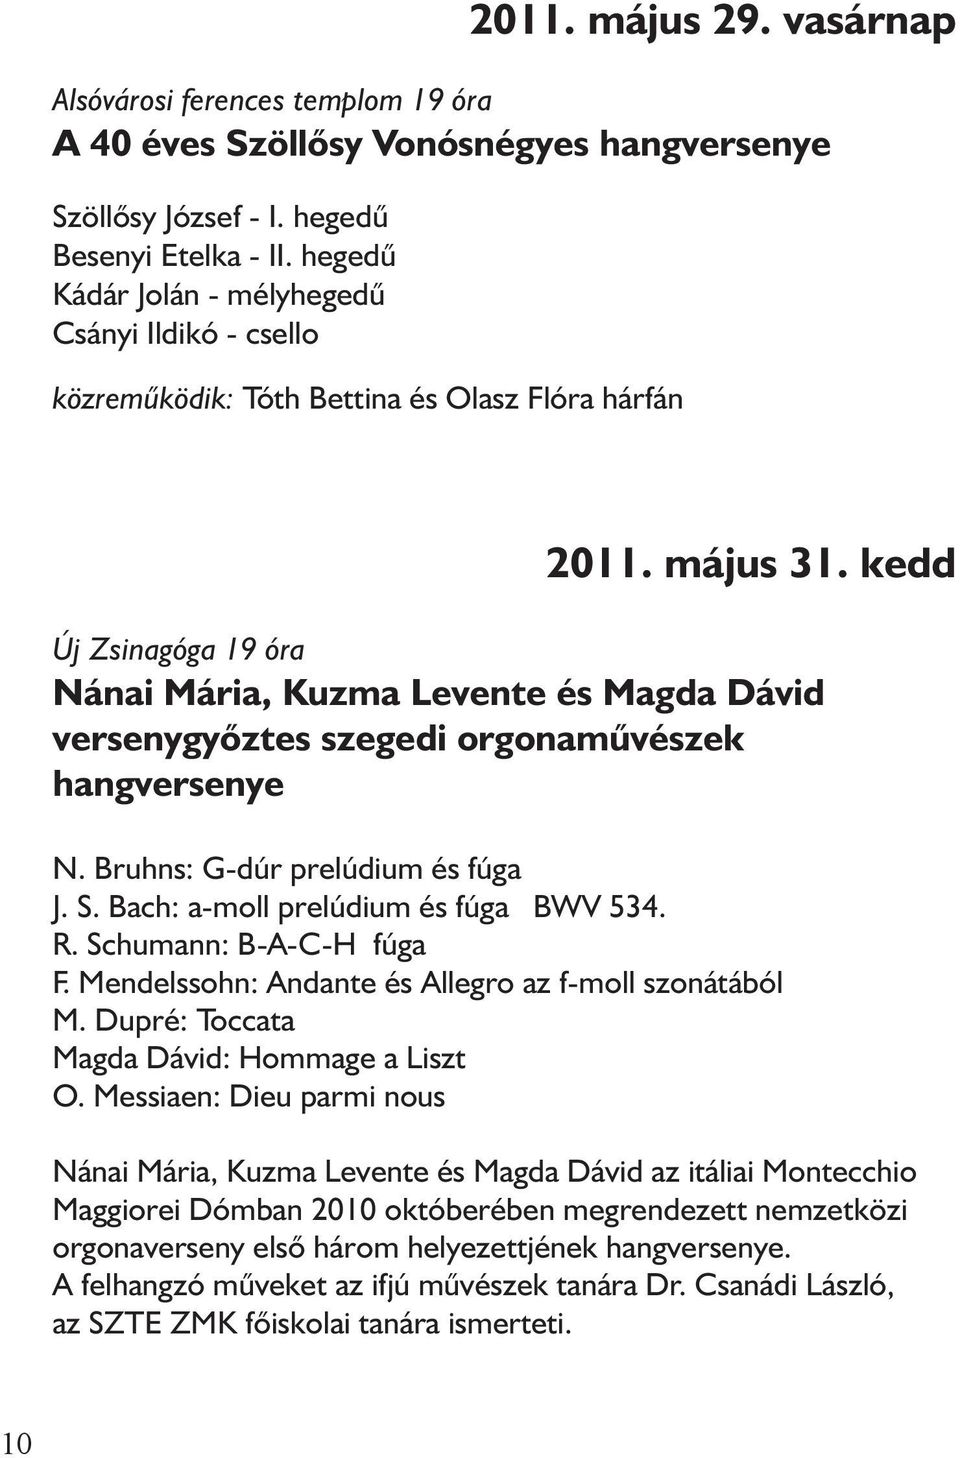 kedd Új Zsinagóga 19 óra Nánai Mária, Kuzma Levente és Magda Dávid versenygyõztes szegedi orgonamûvészek hangversenye N. Bruhns: G-dúr prelúdium és fúga J. S. Bach: a-moll prelúdium és fúga BWV 534.